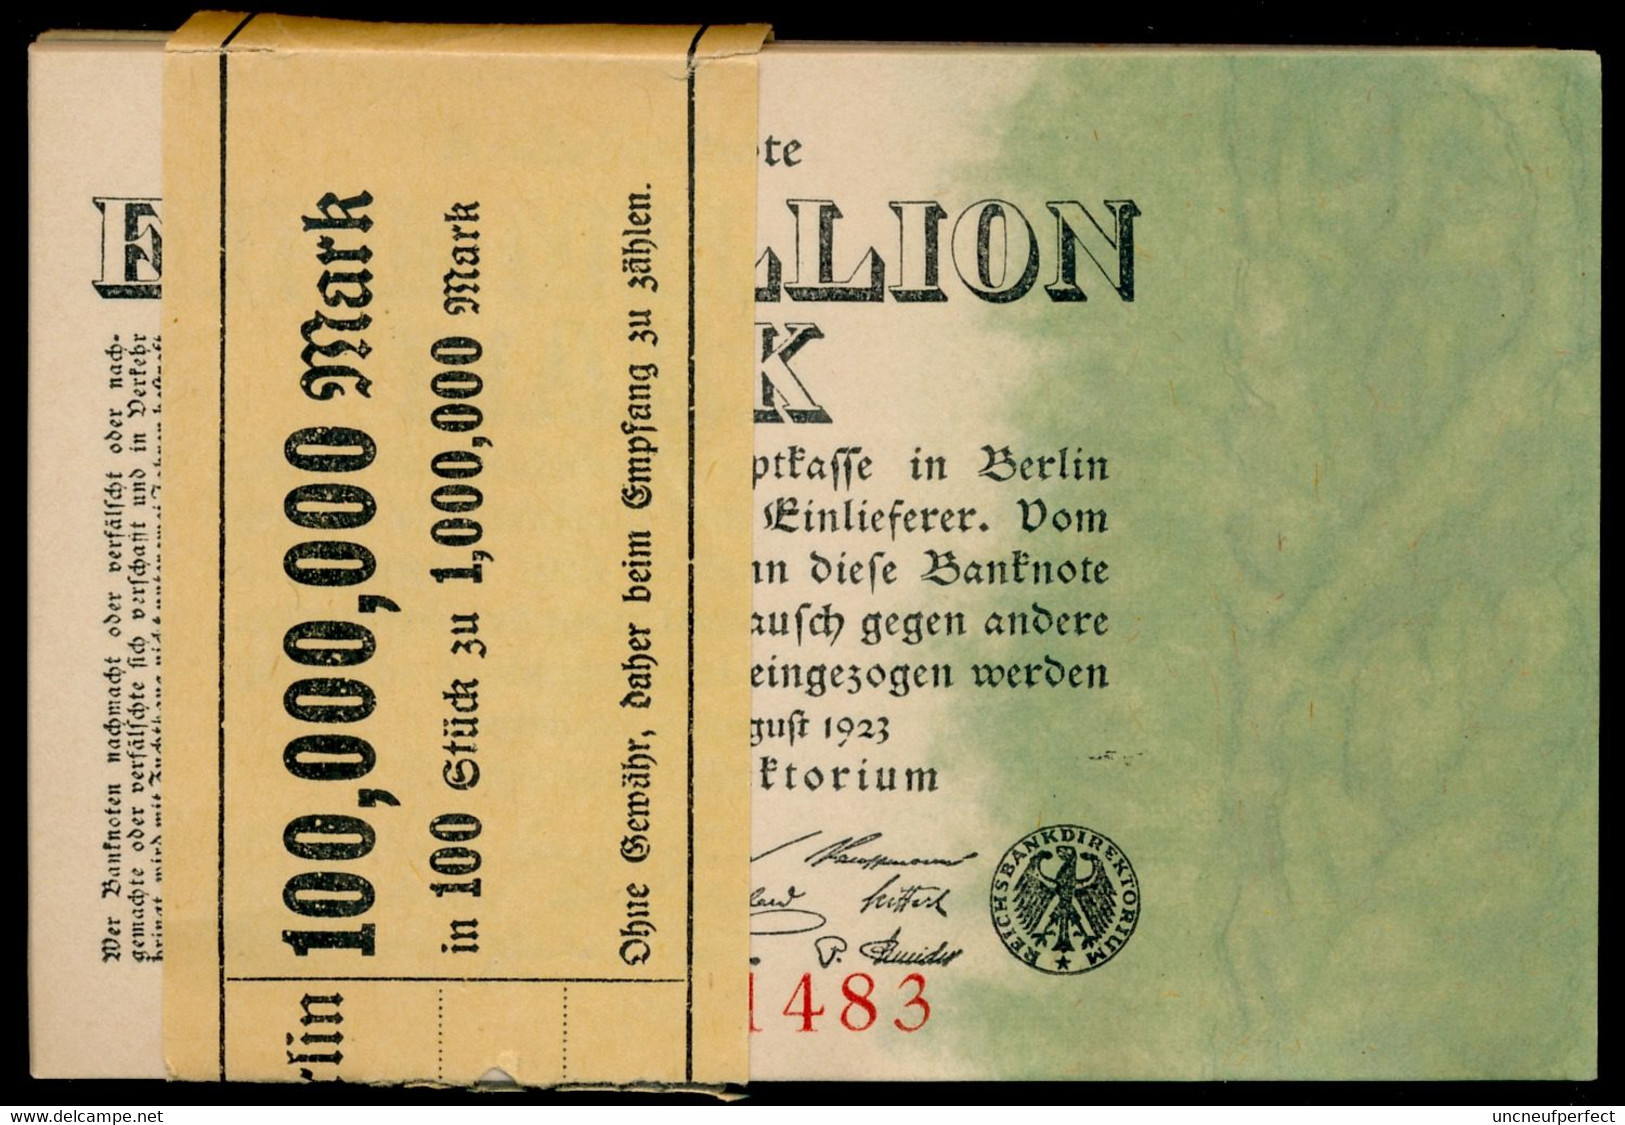 P101 Ro100 DEU-113. 1 Million Mark 1923 UNC NEUF - 1 Million Mark